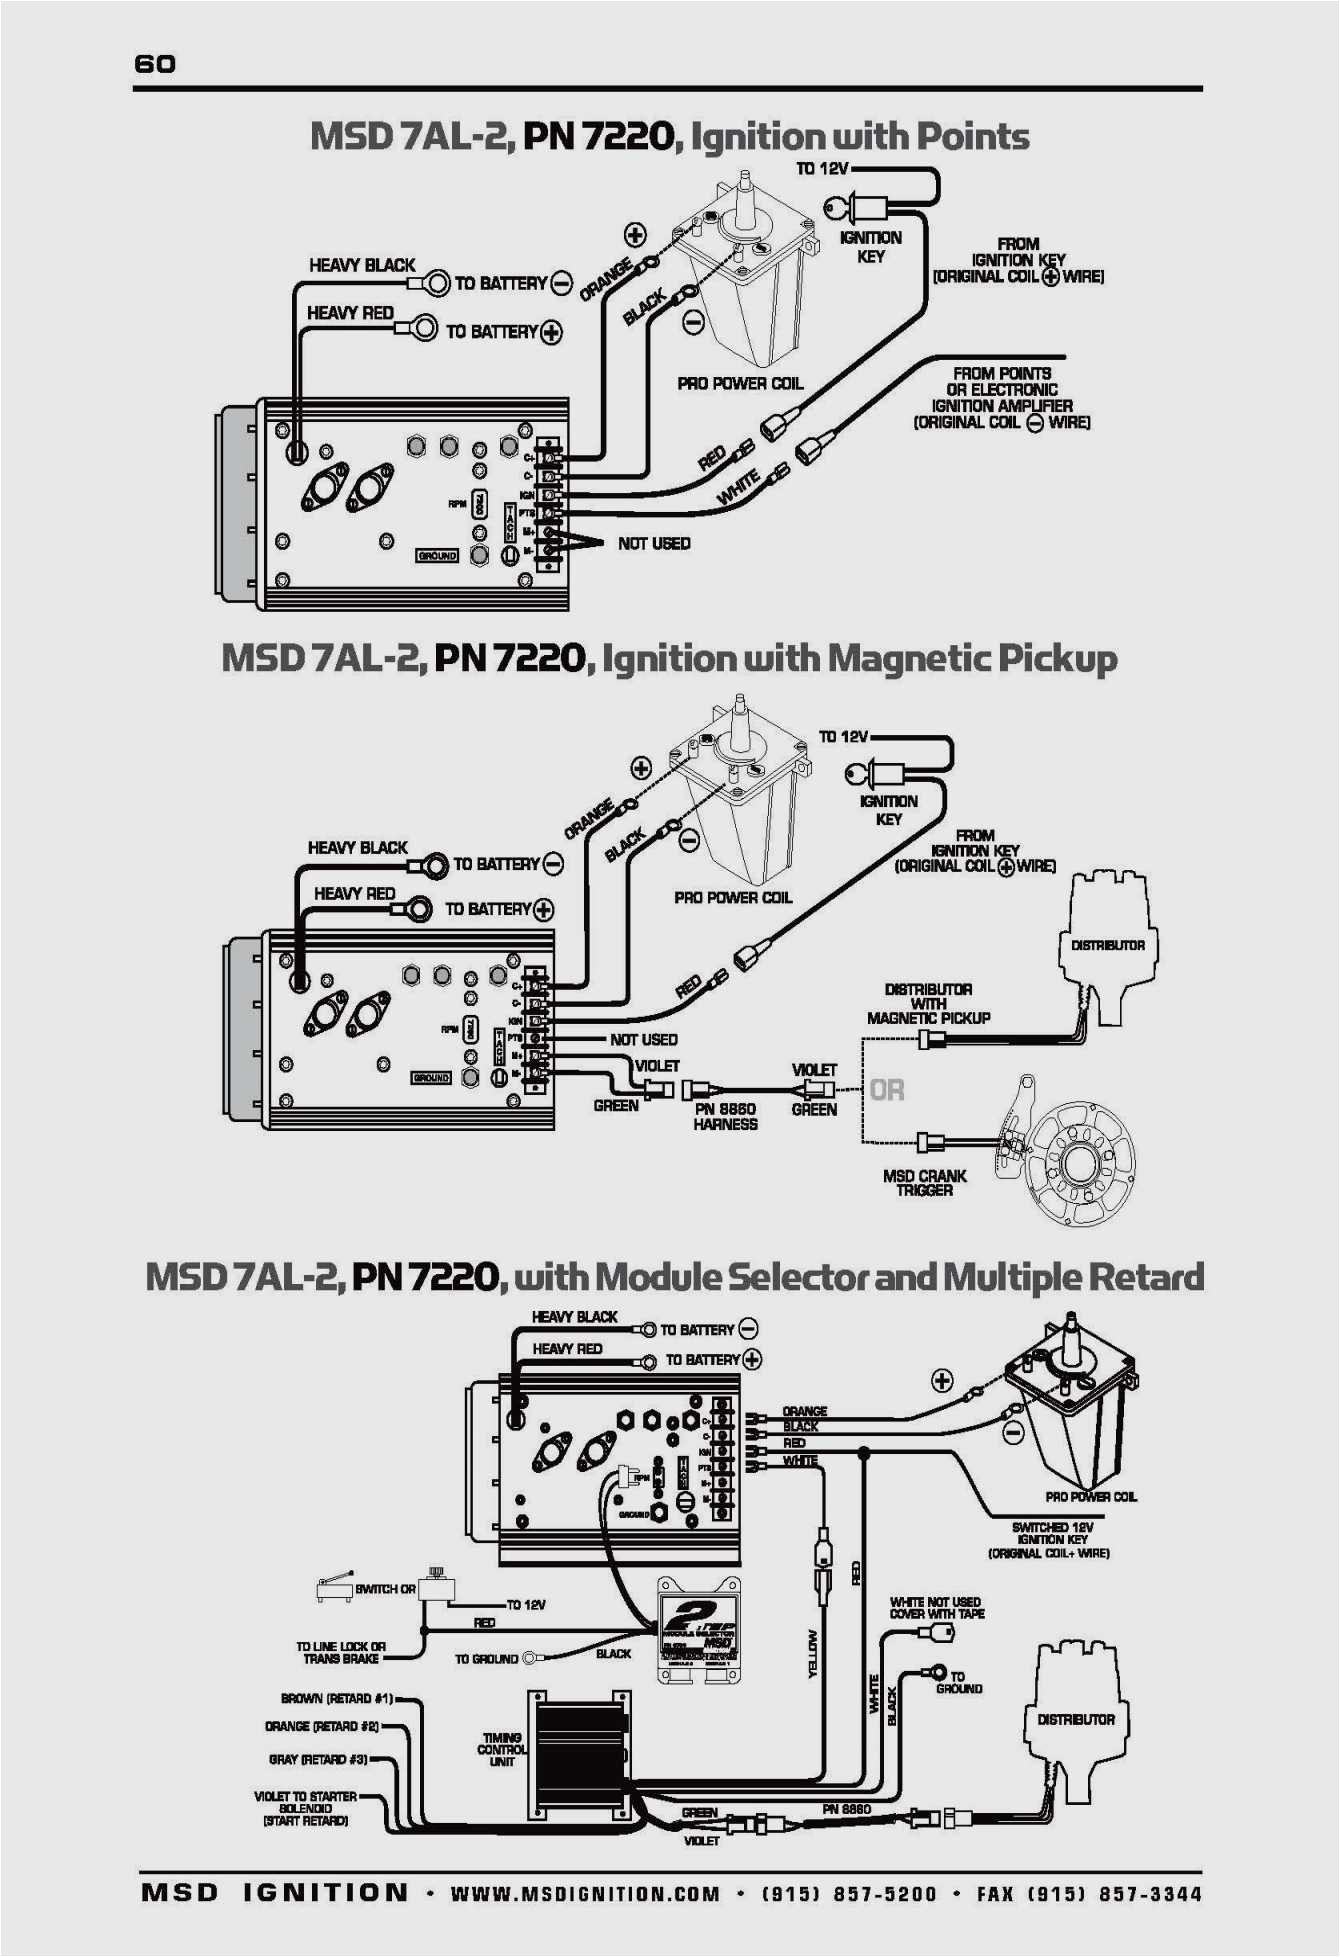 msd 7al 2 wiring diagram transbrake schematics wiring data u2022 rh case hub co msd ignition 6al wiring diagram msd ignition wiring diagram chevy